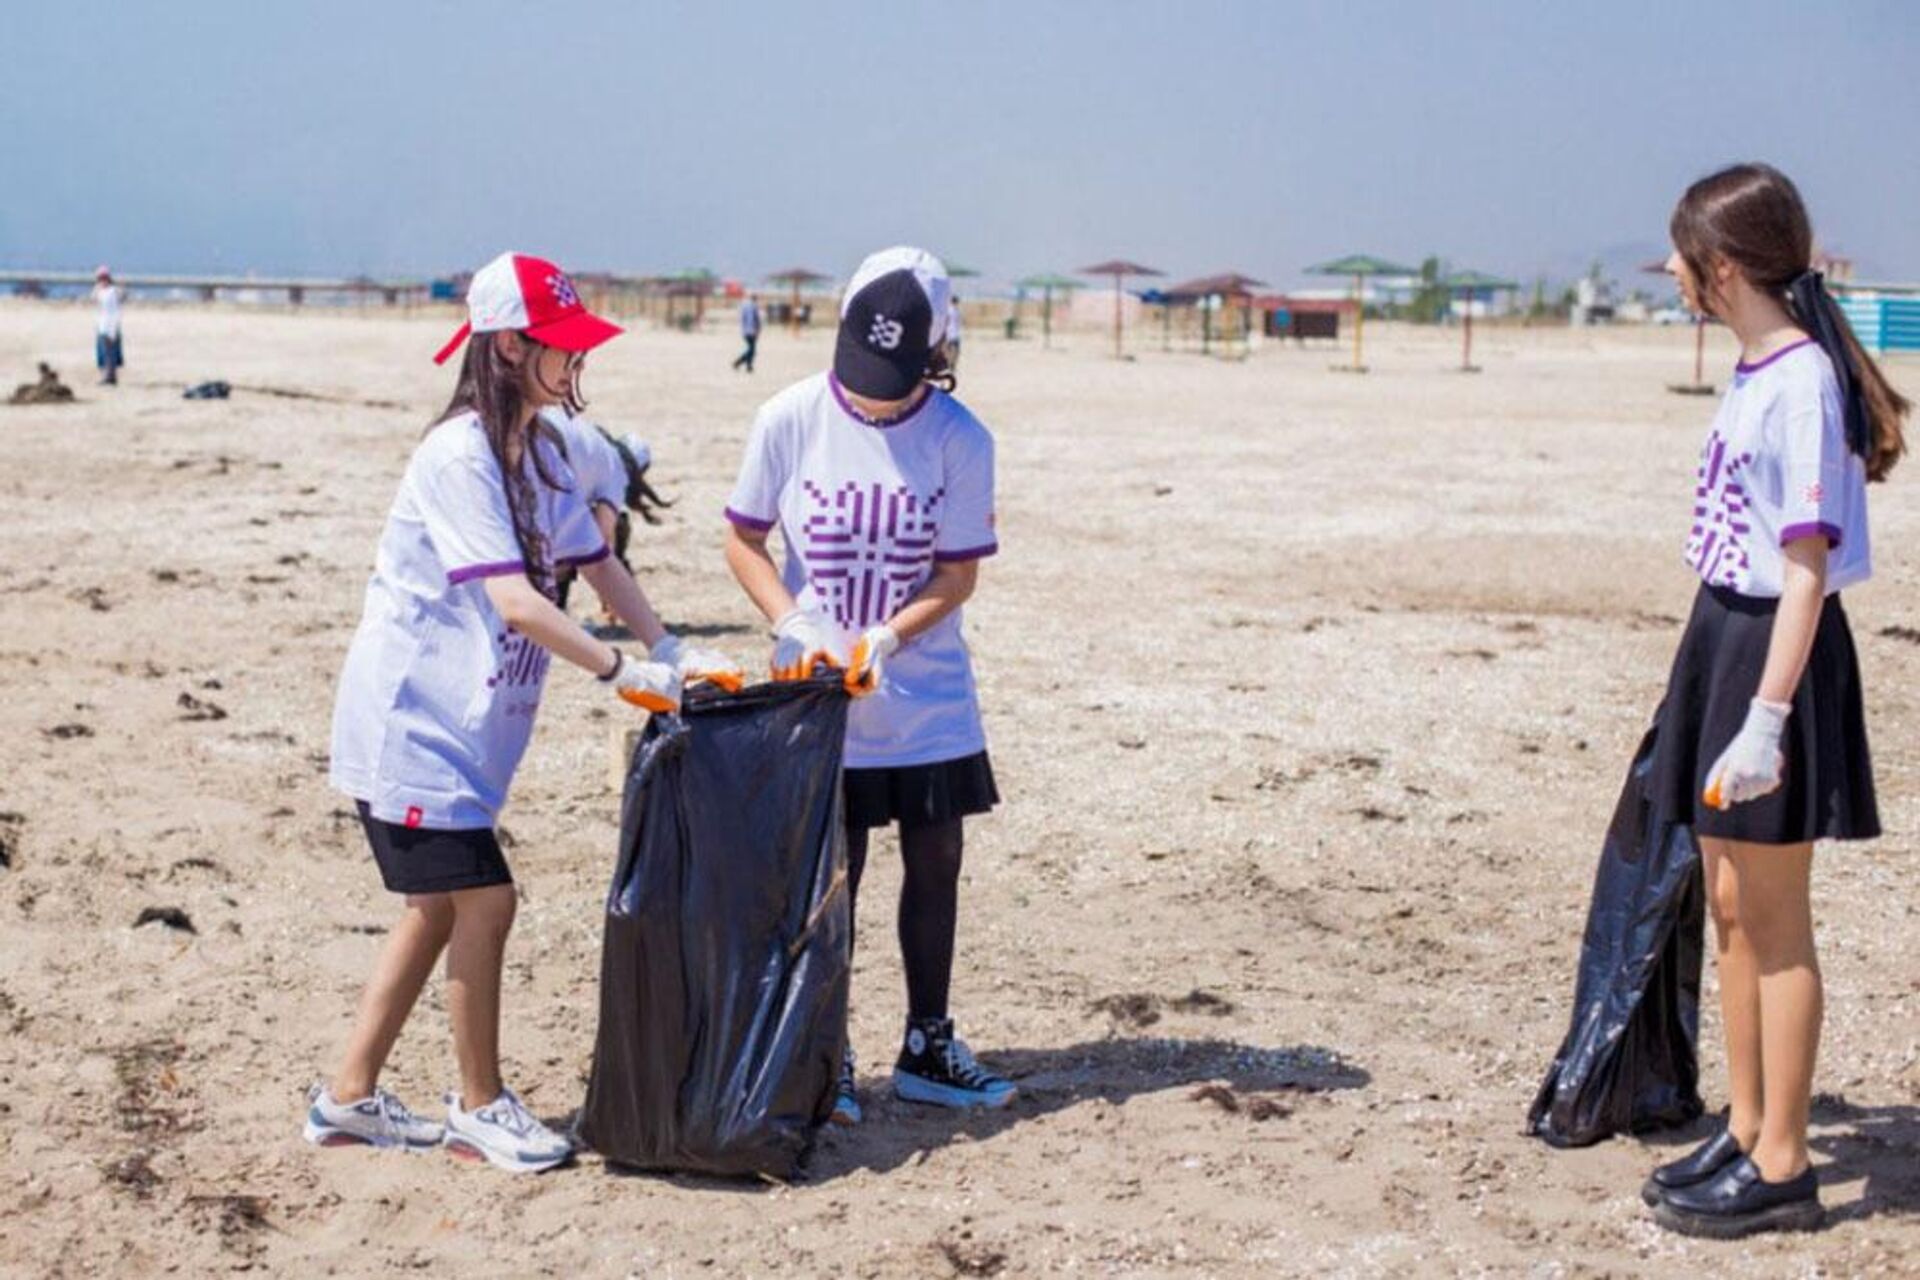  Волонтеры убрали мусор на бакинском пляже - Sputnik Азербайджан, 1920, 29.04.2022